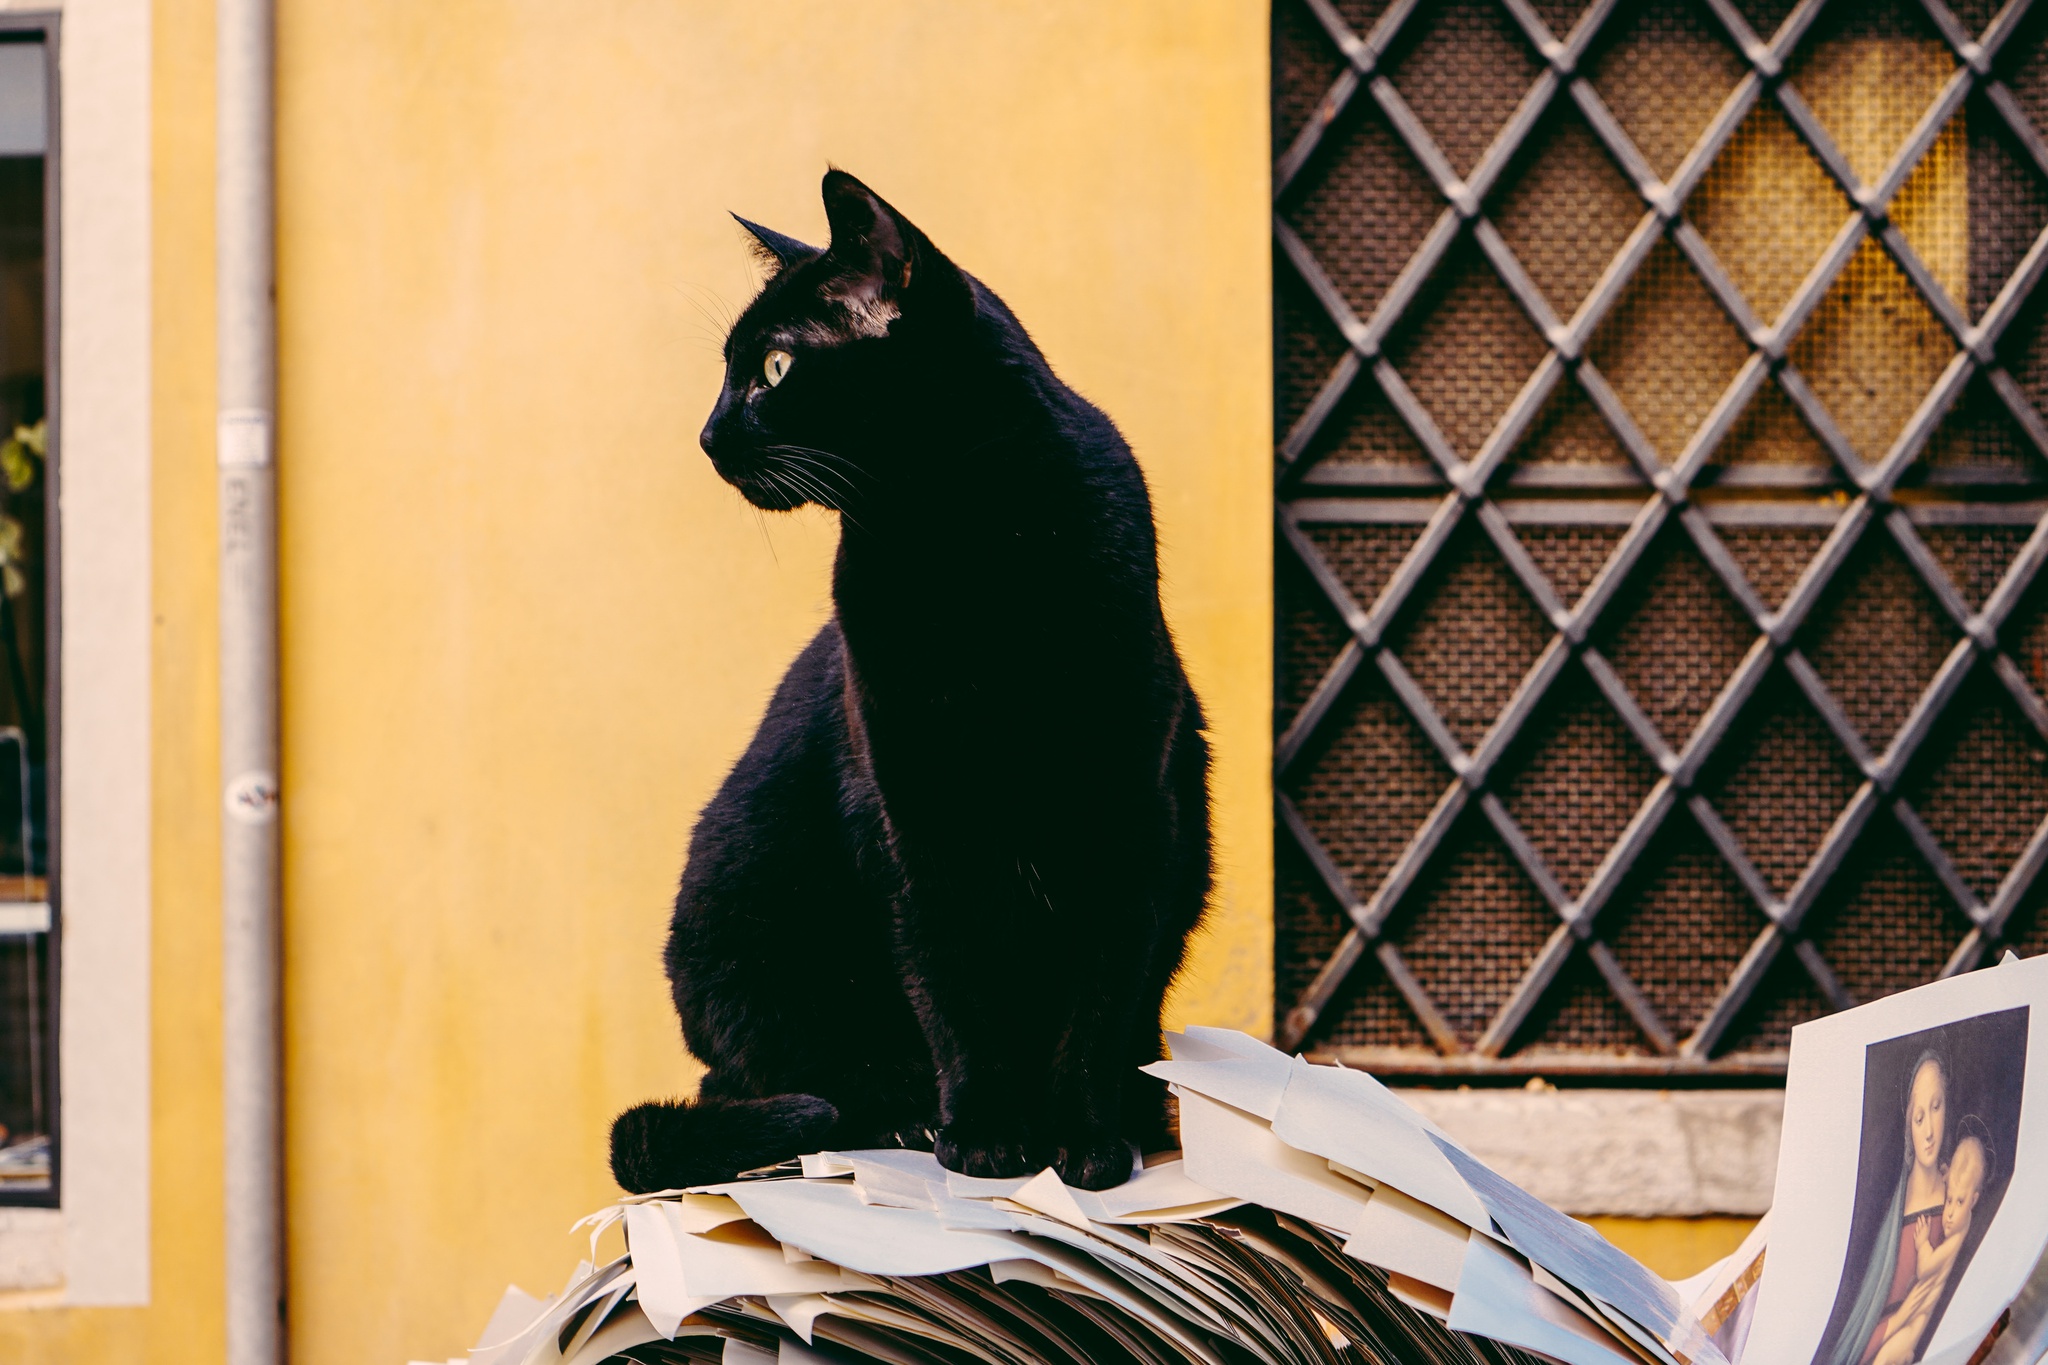 Gato preto é sinal de azar?